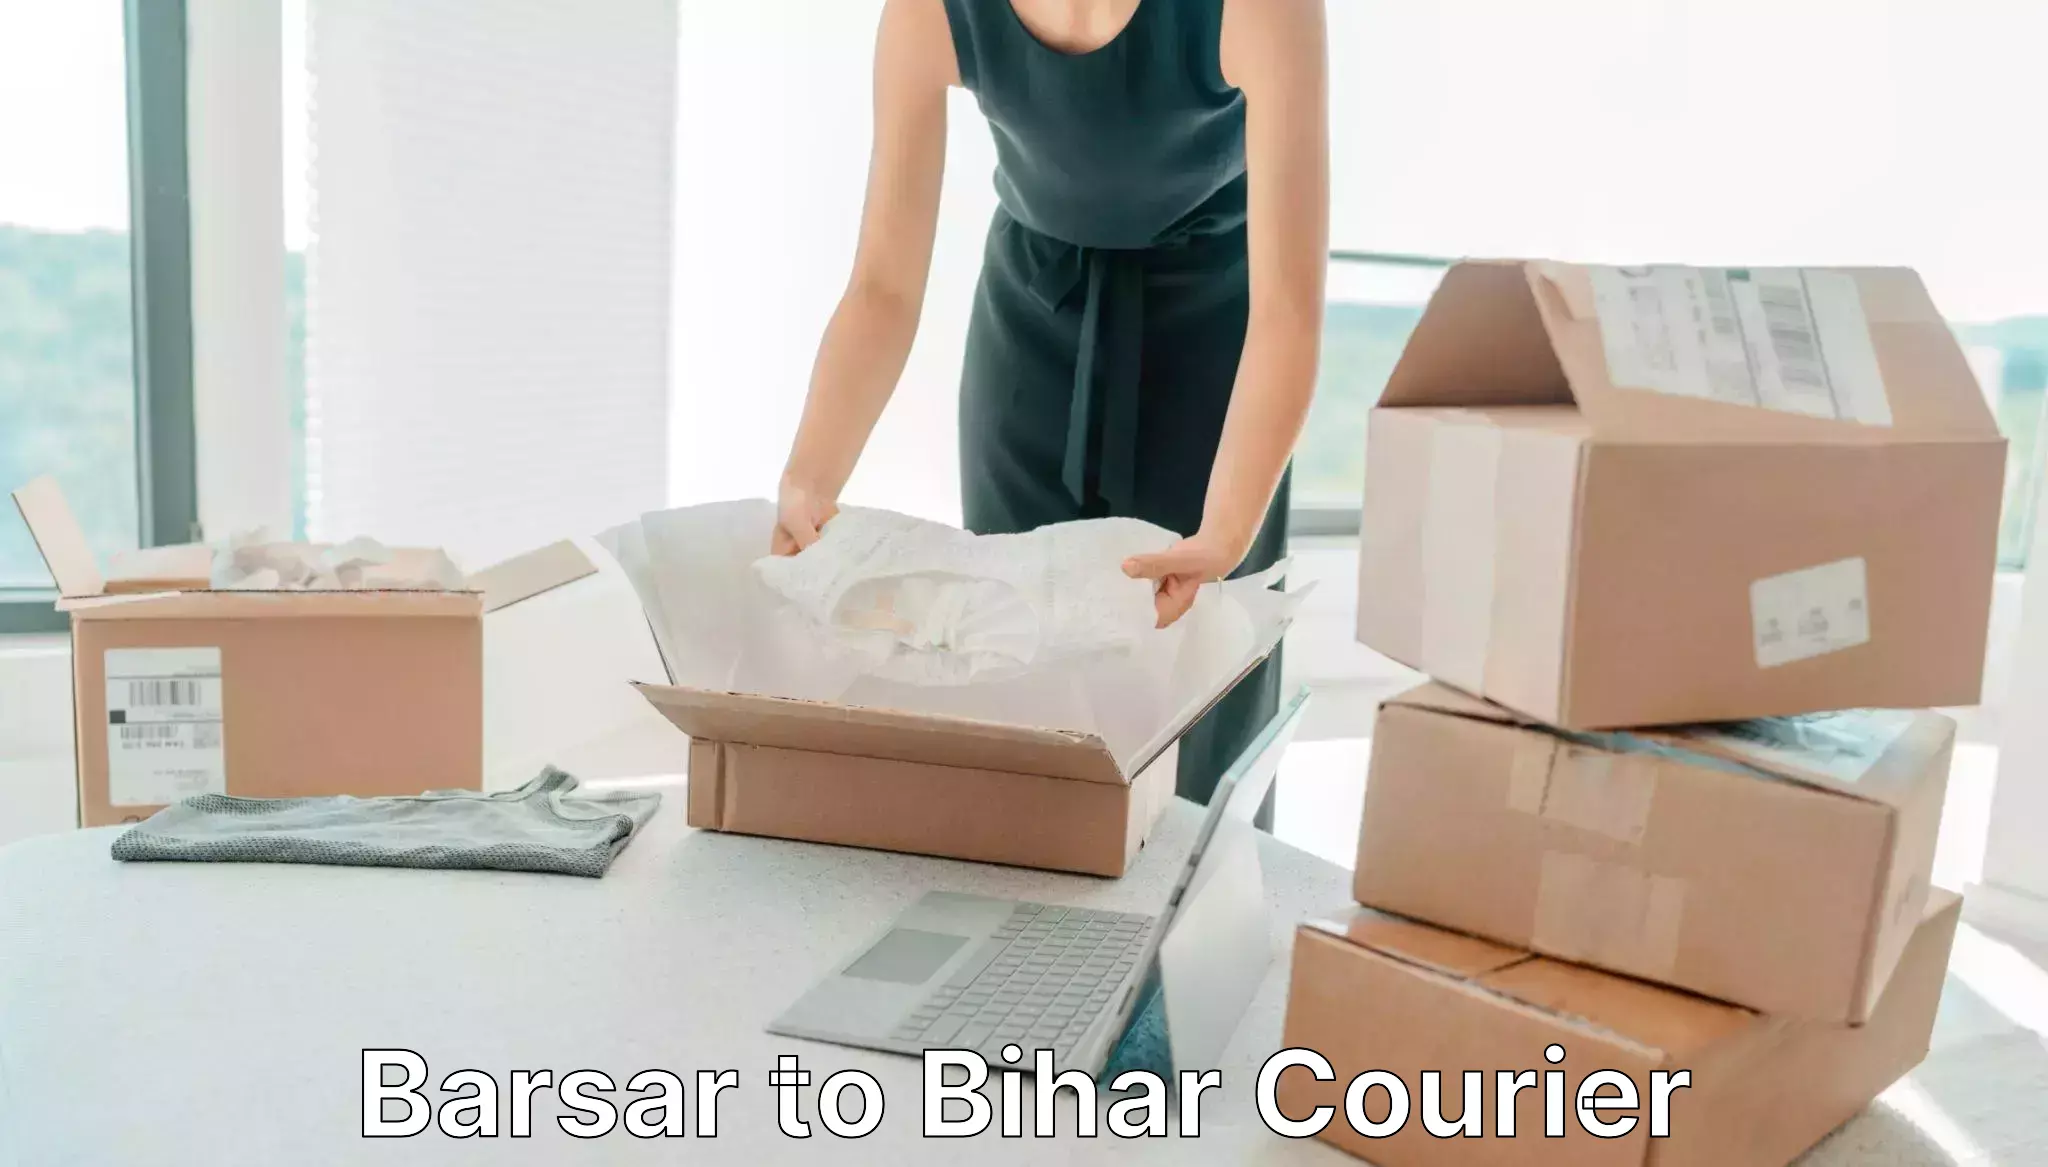 Express courier capabilities Barsar to Sheikhpura